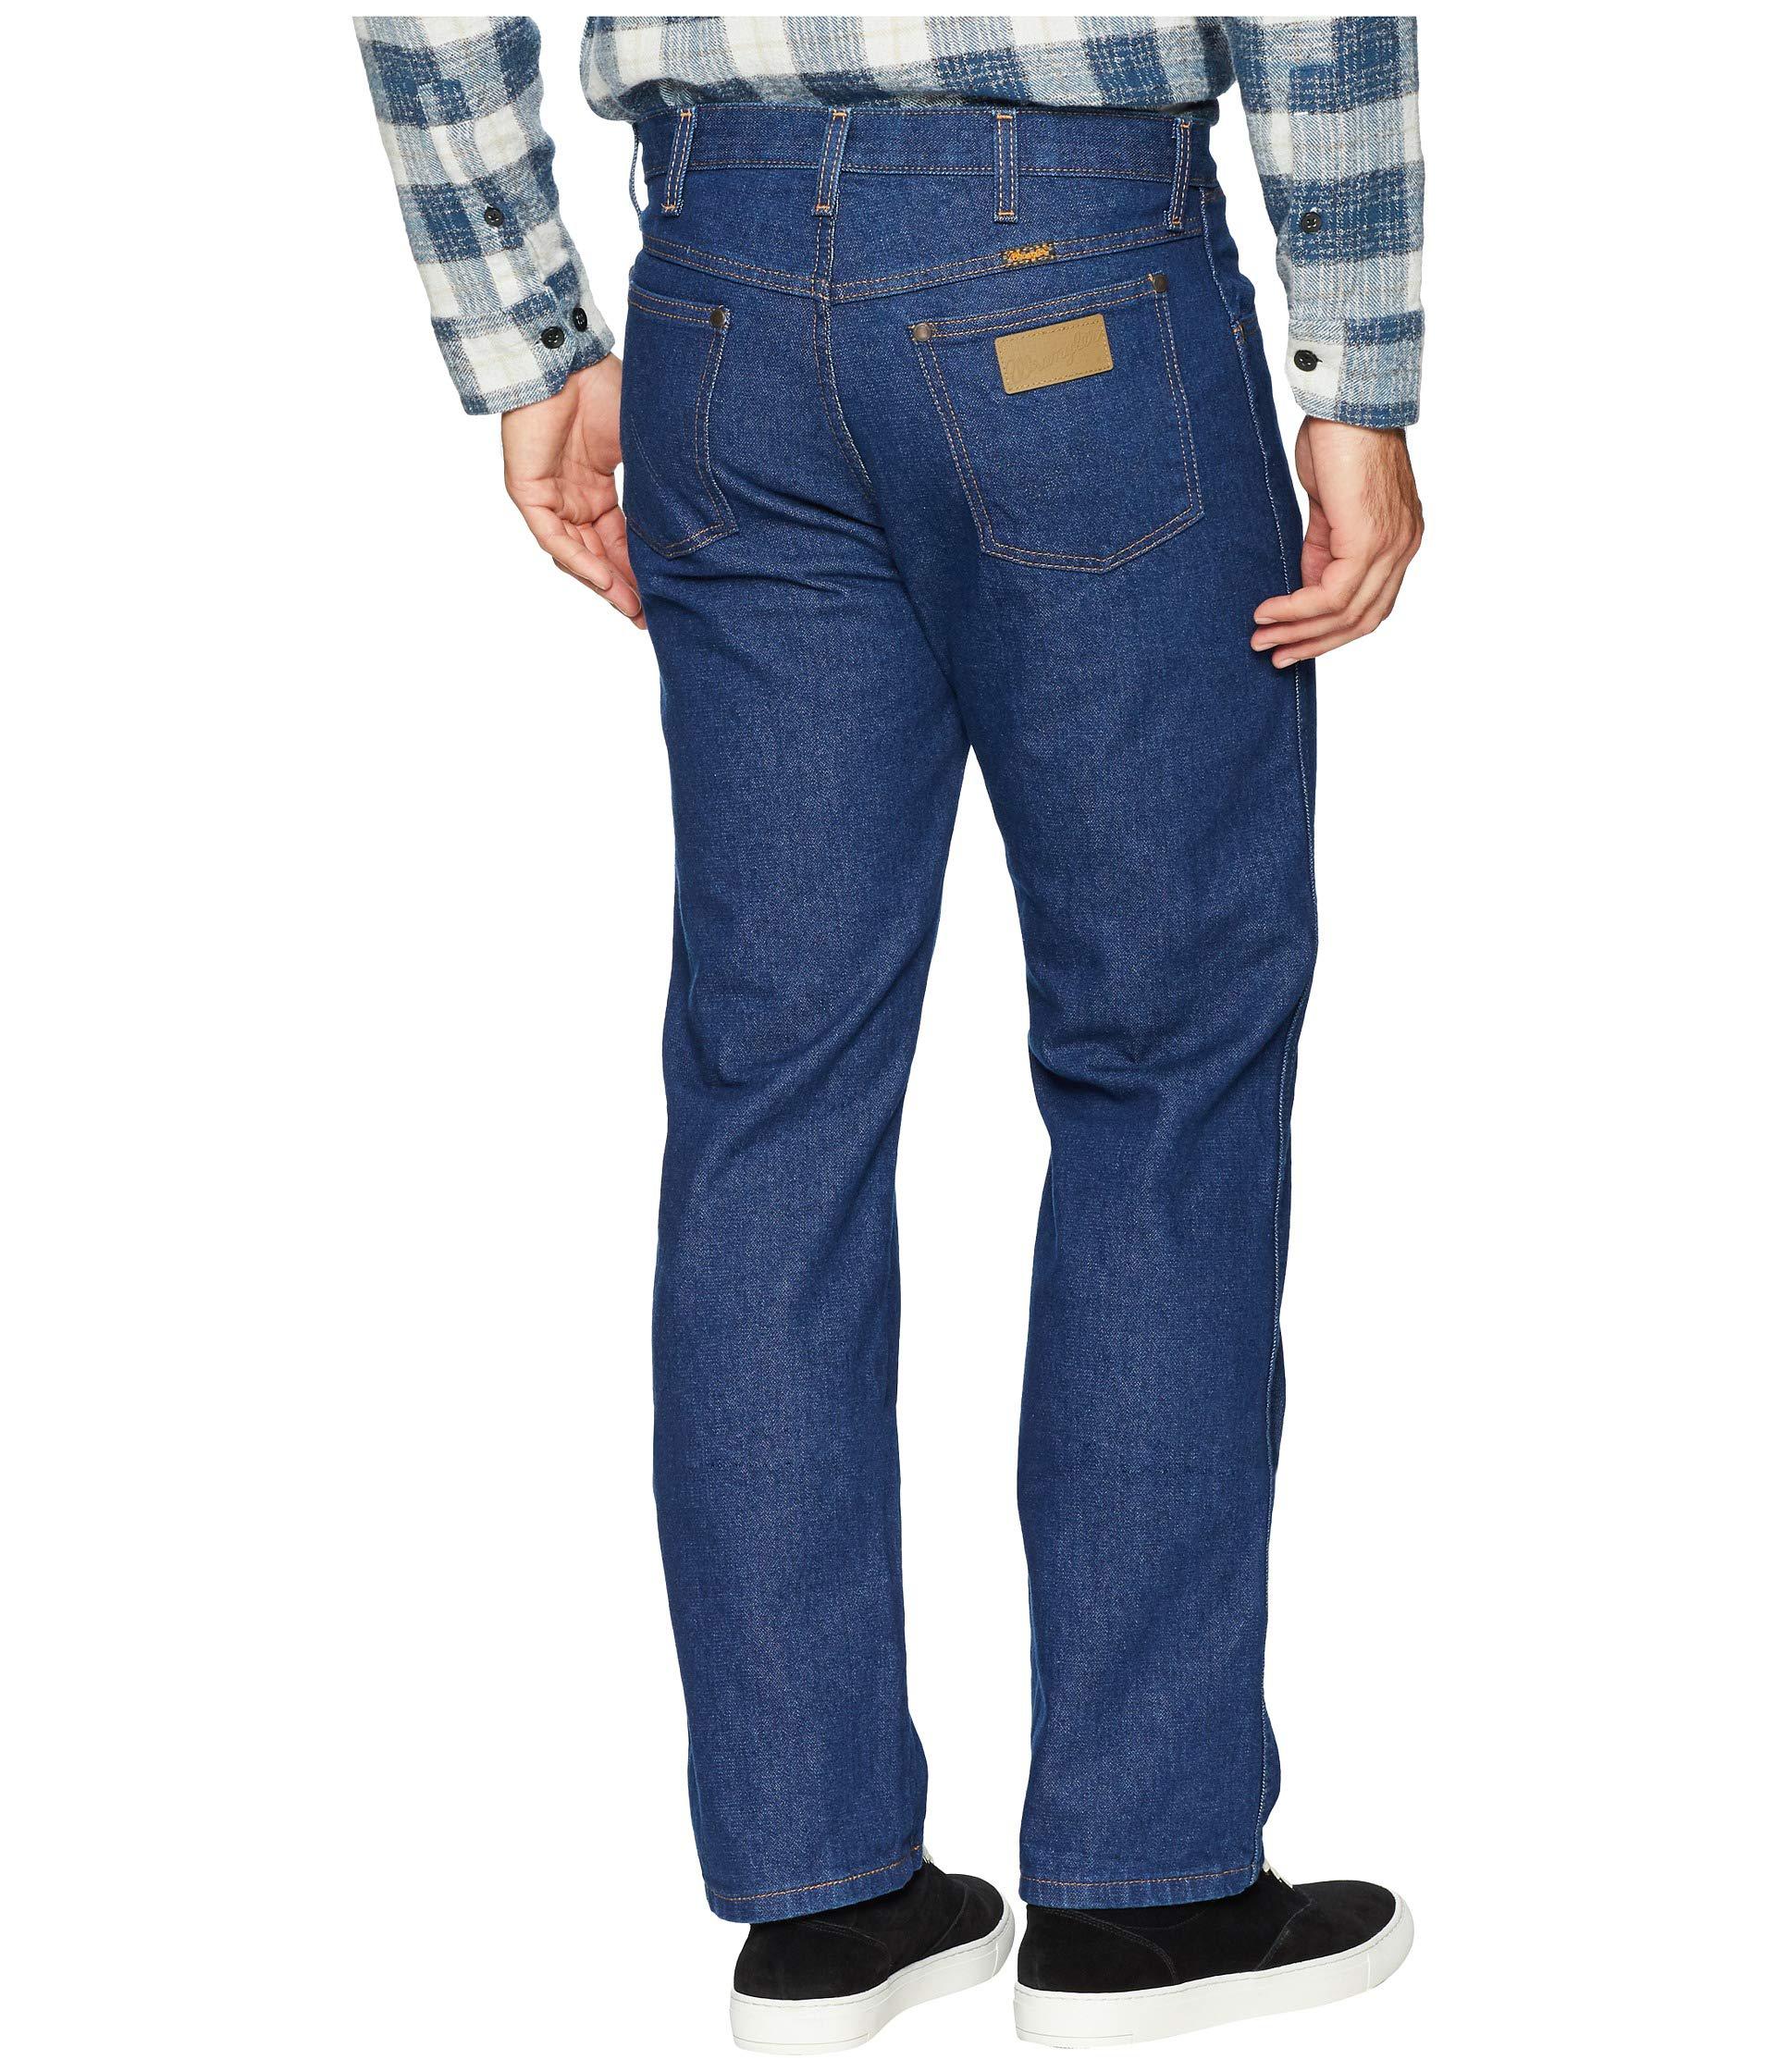 Buy > mens wrangler 13mwz jeans > in stock